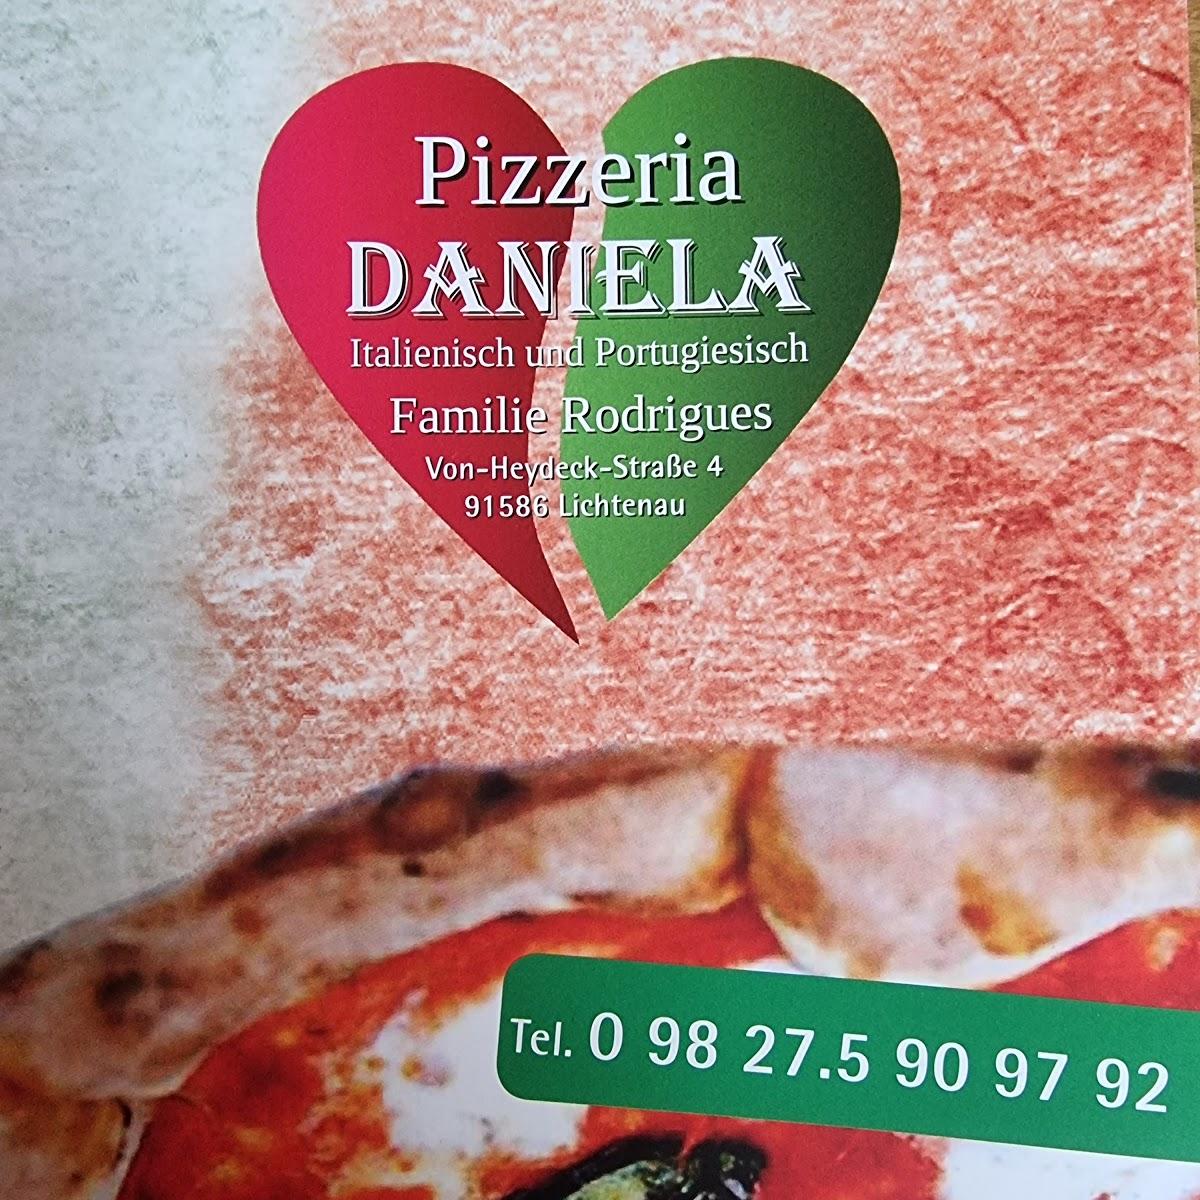 Restaurant "Pizzeria Daniela" in Lichtenau